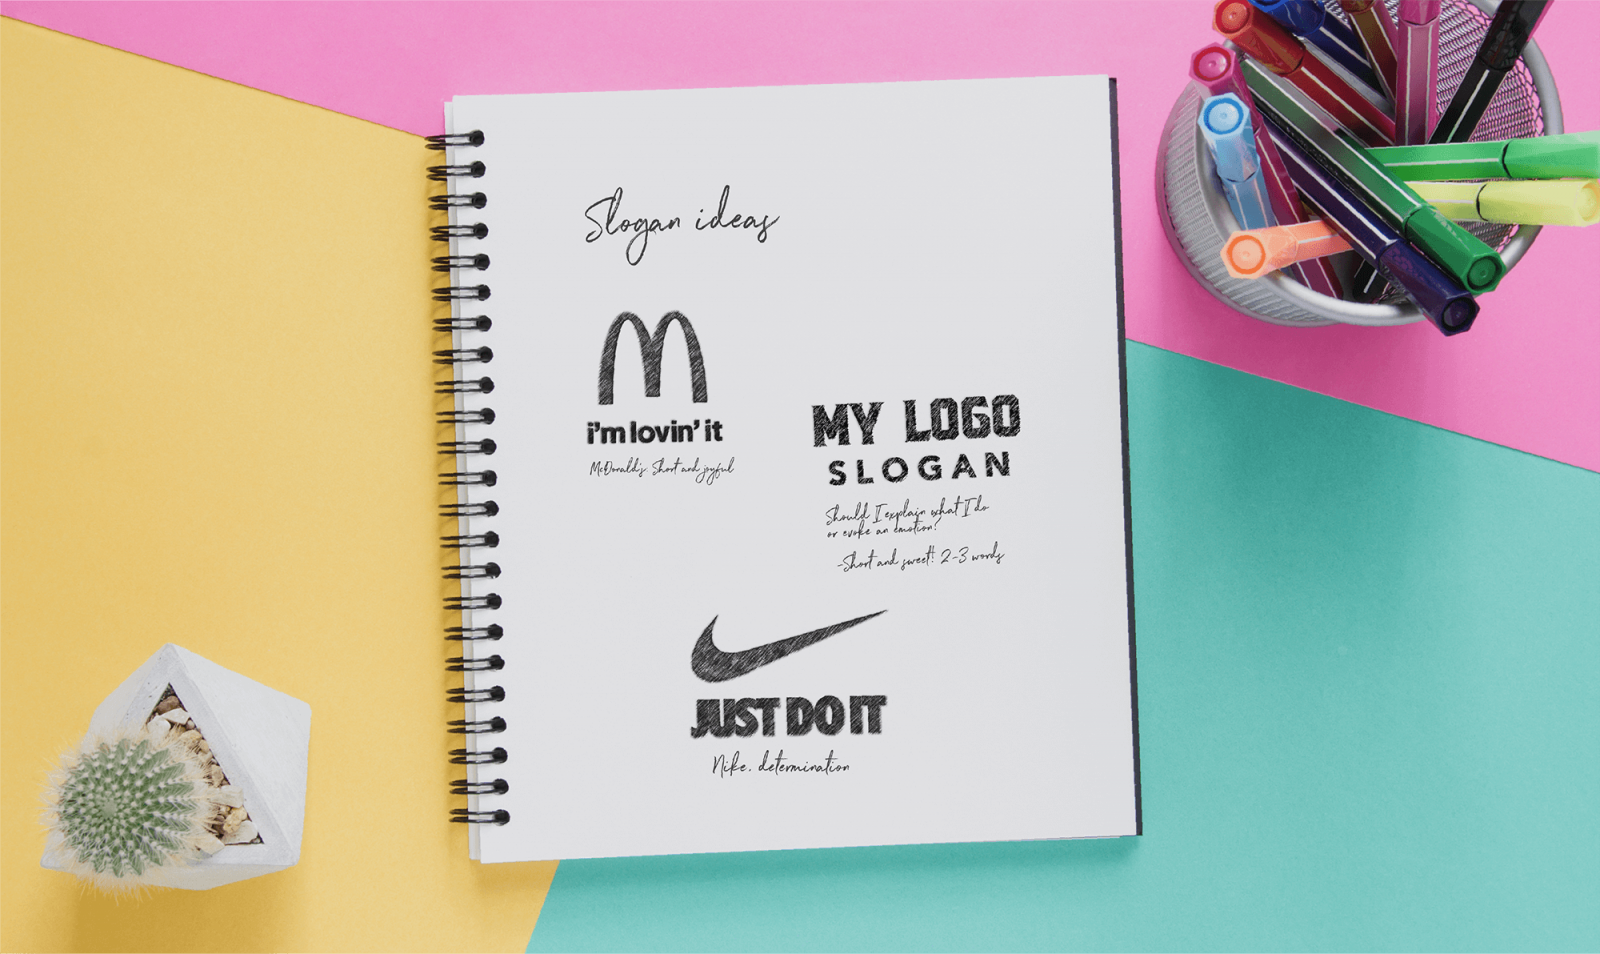 Concevoir un logo avec un slogan